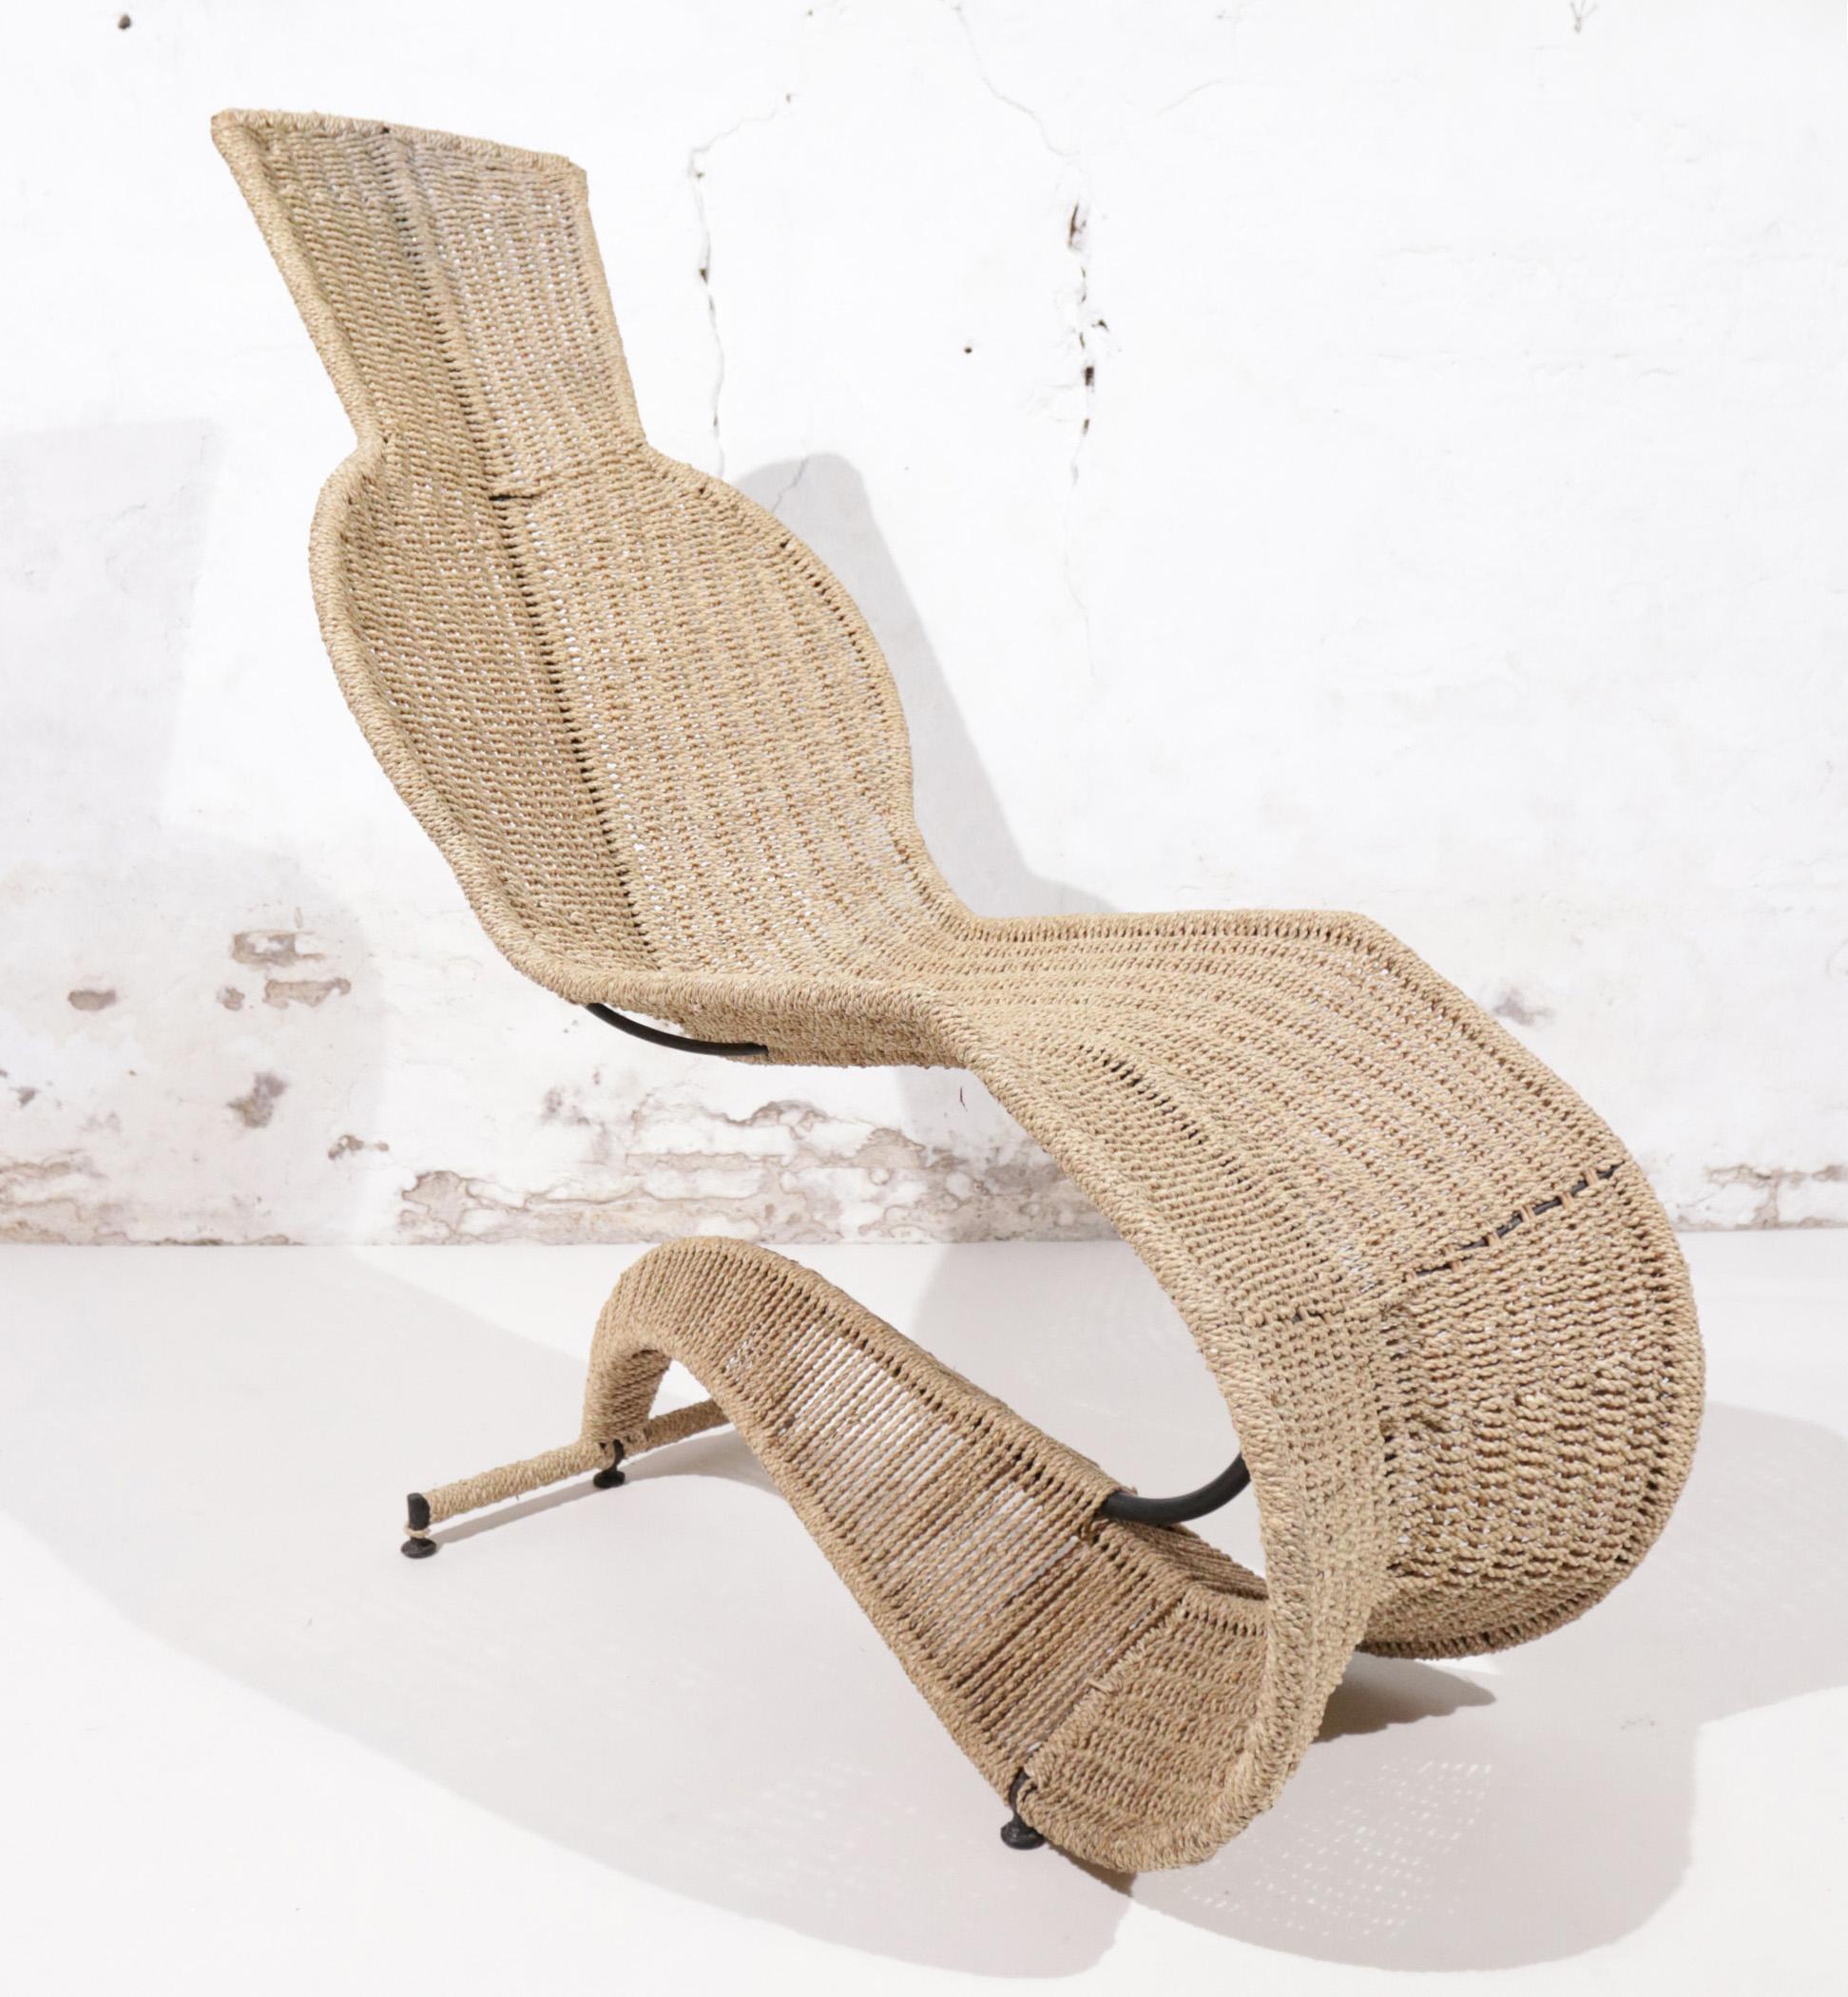 L'une des chaises les plus spéciales que nous ayons jamais eues est celle conçue par Tom Dixon.
Une armature en acier comme squelette et de l'herbe de mer tissée comme peau en font une véritable sculpture.
Non seulement il a l'air cool, mais il